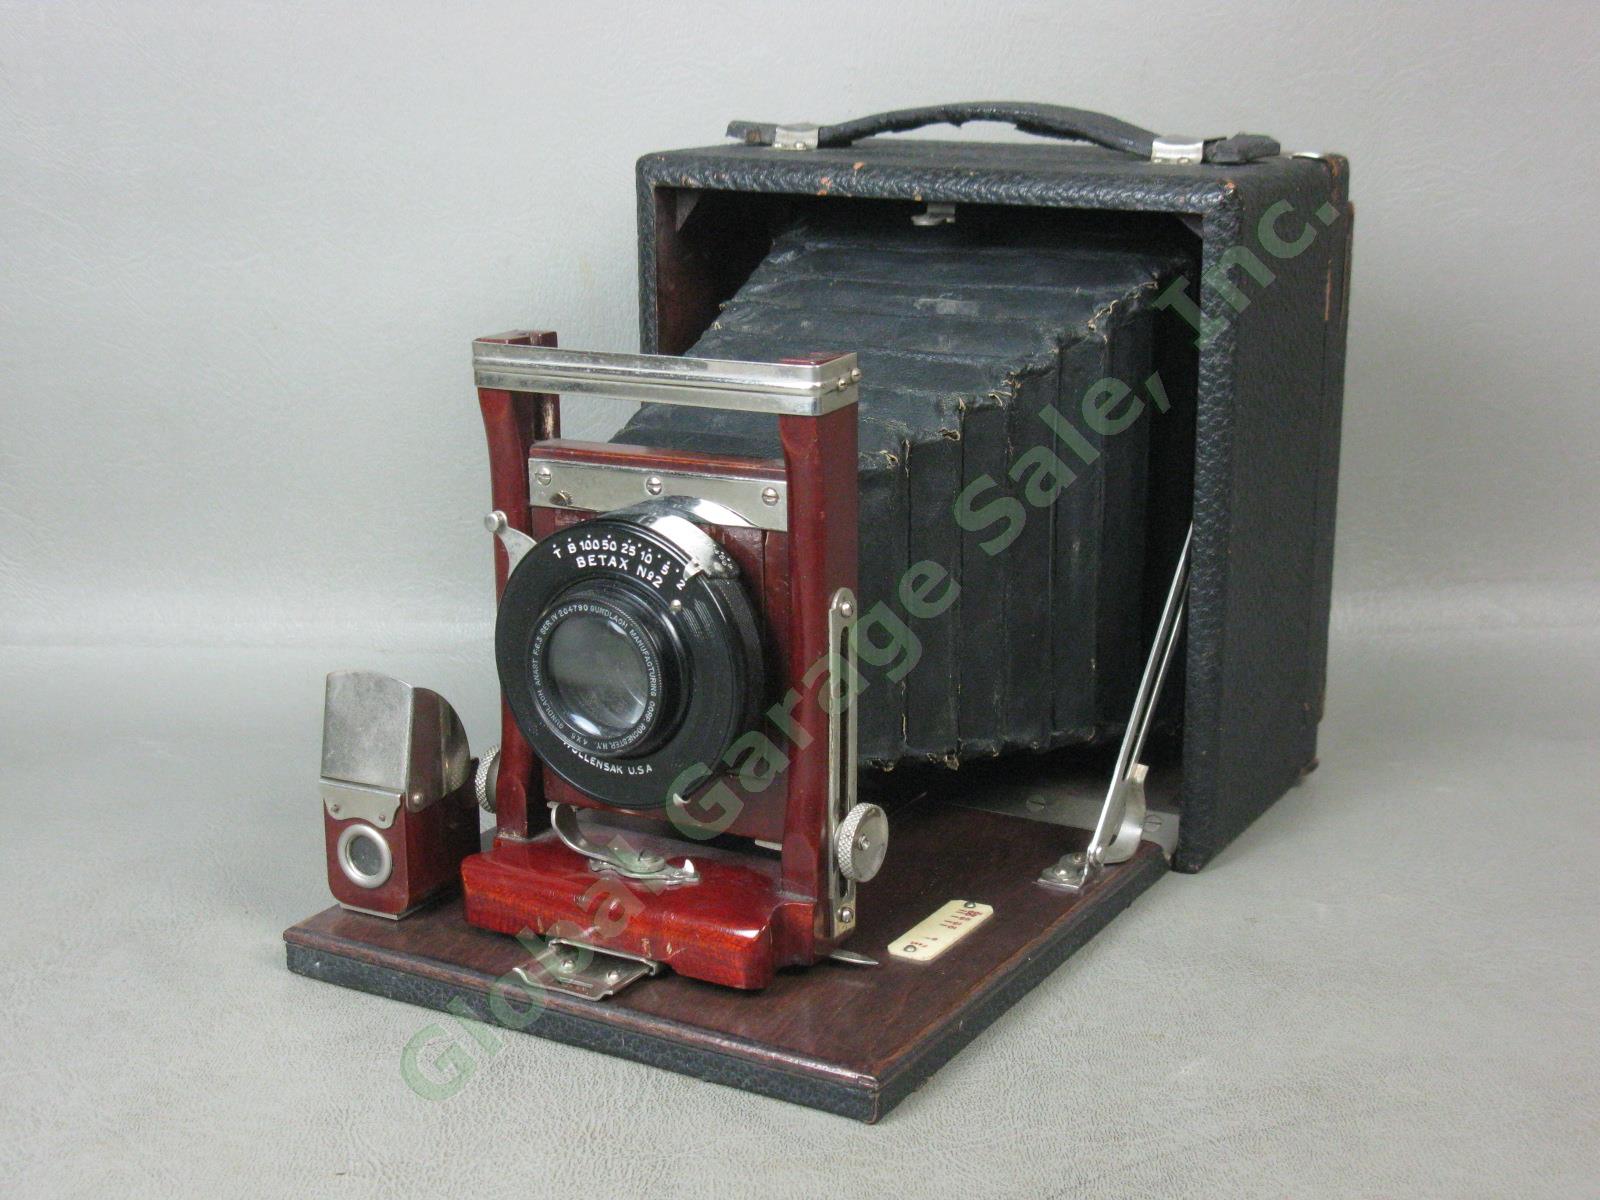 Antique Gundlach 4x5 Folding Camera Wollensack Betax No 2 f/6.3 Series IV Lens